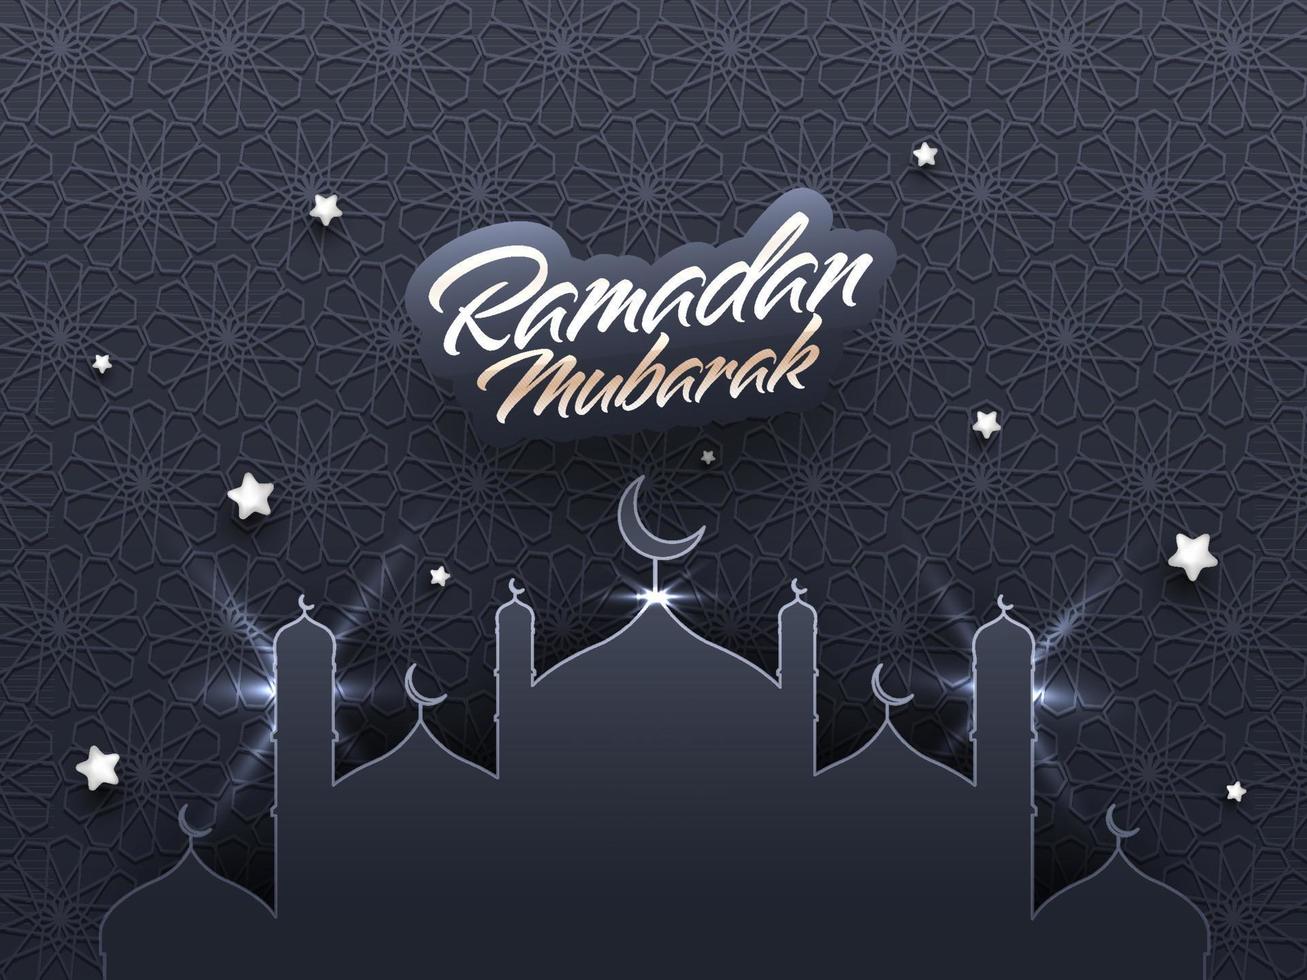 islâmico piedosos mês do orações, Ramadã Mubarak com lindo mesquita em cinzento árabe estampado fundo. vetor